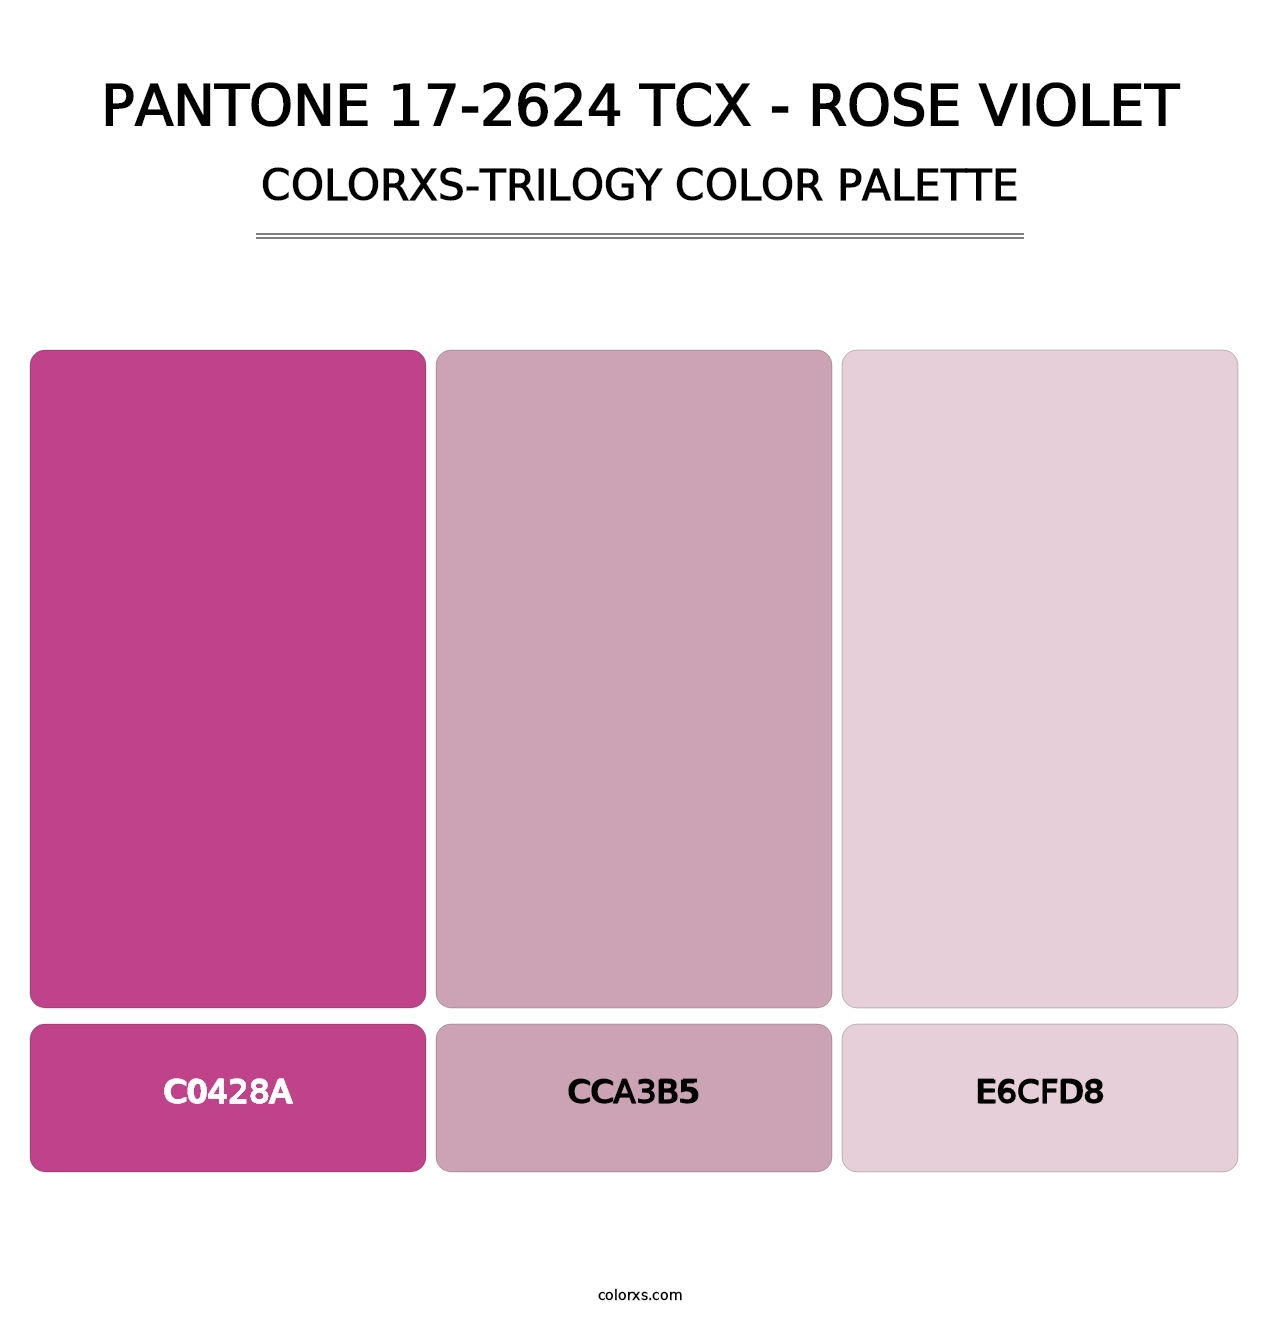 PANTONE 17-2624 TCX - Rose Violet - Colorxs Trilogy Palette